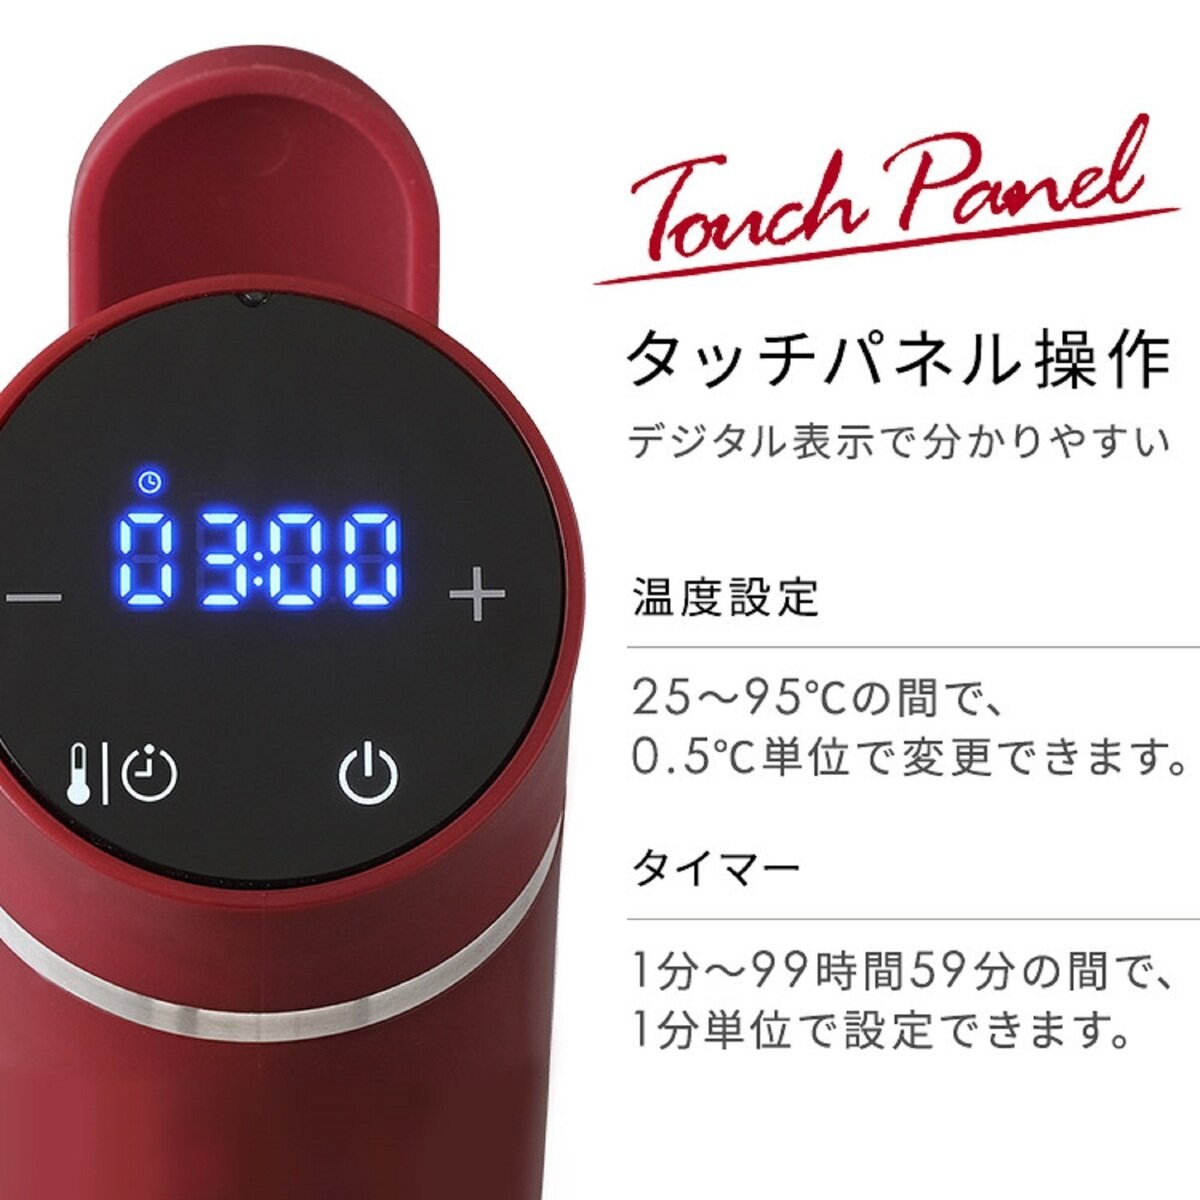 アイリスオーヤマ スリム低温調理器 LTC-02 | Costco Japan